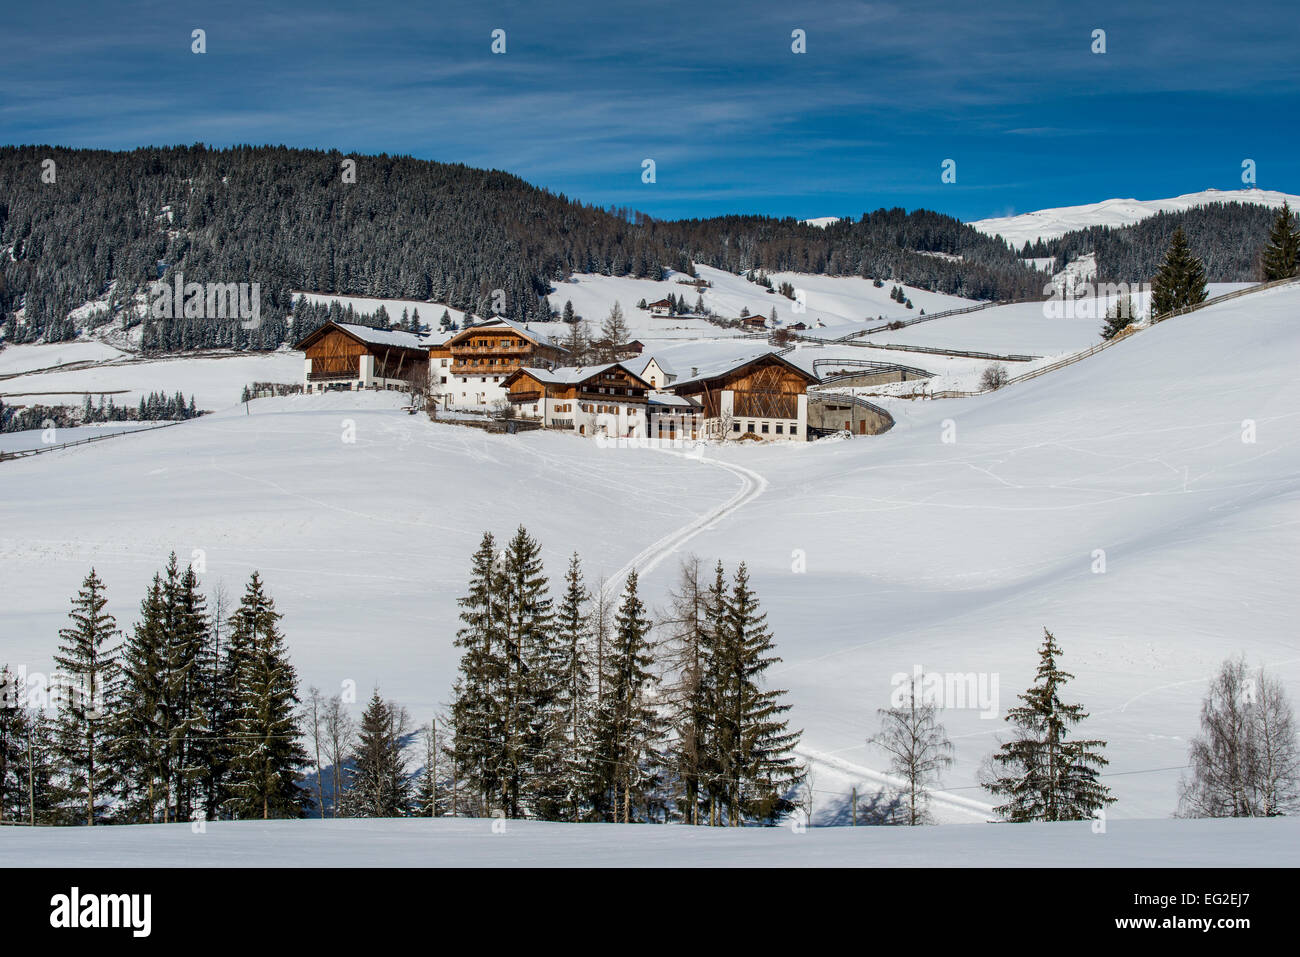 Landschaftlich reizvolle Winter Blick eines Bergdorfes in Villnoss oder Val di Funes, Alto Adige - Südtirol, Italien Stockfoto